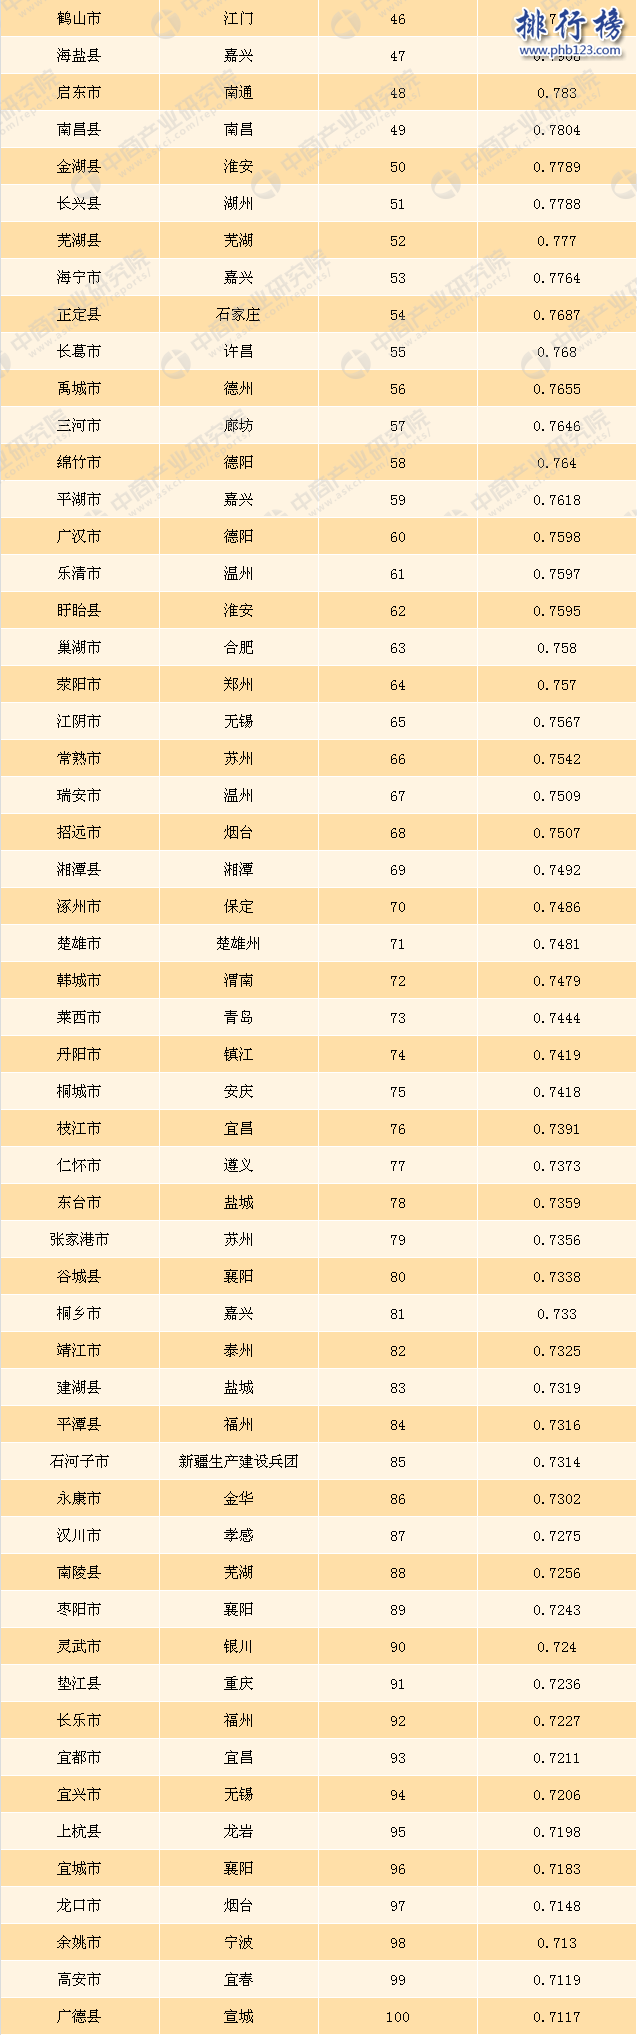 2017全国投资潜力百强县市排名:廊坊居首,阜阳第二(完整名单)